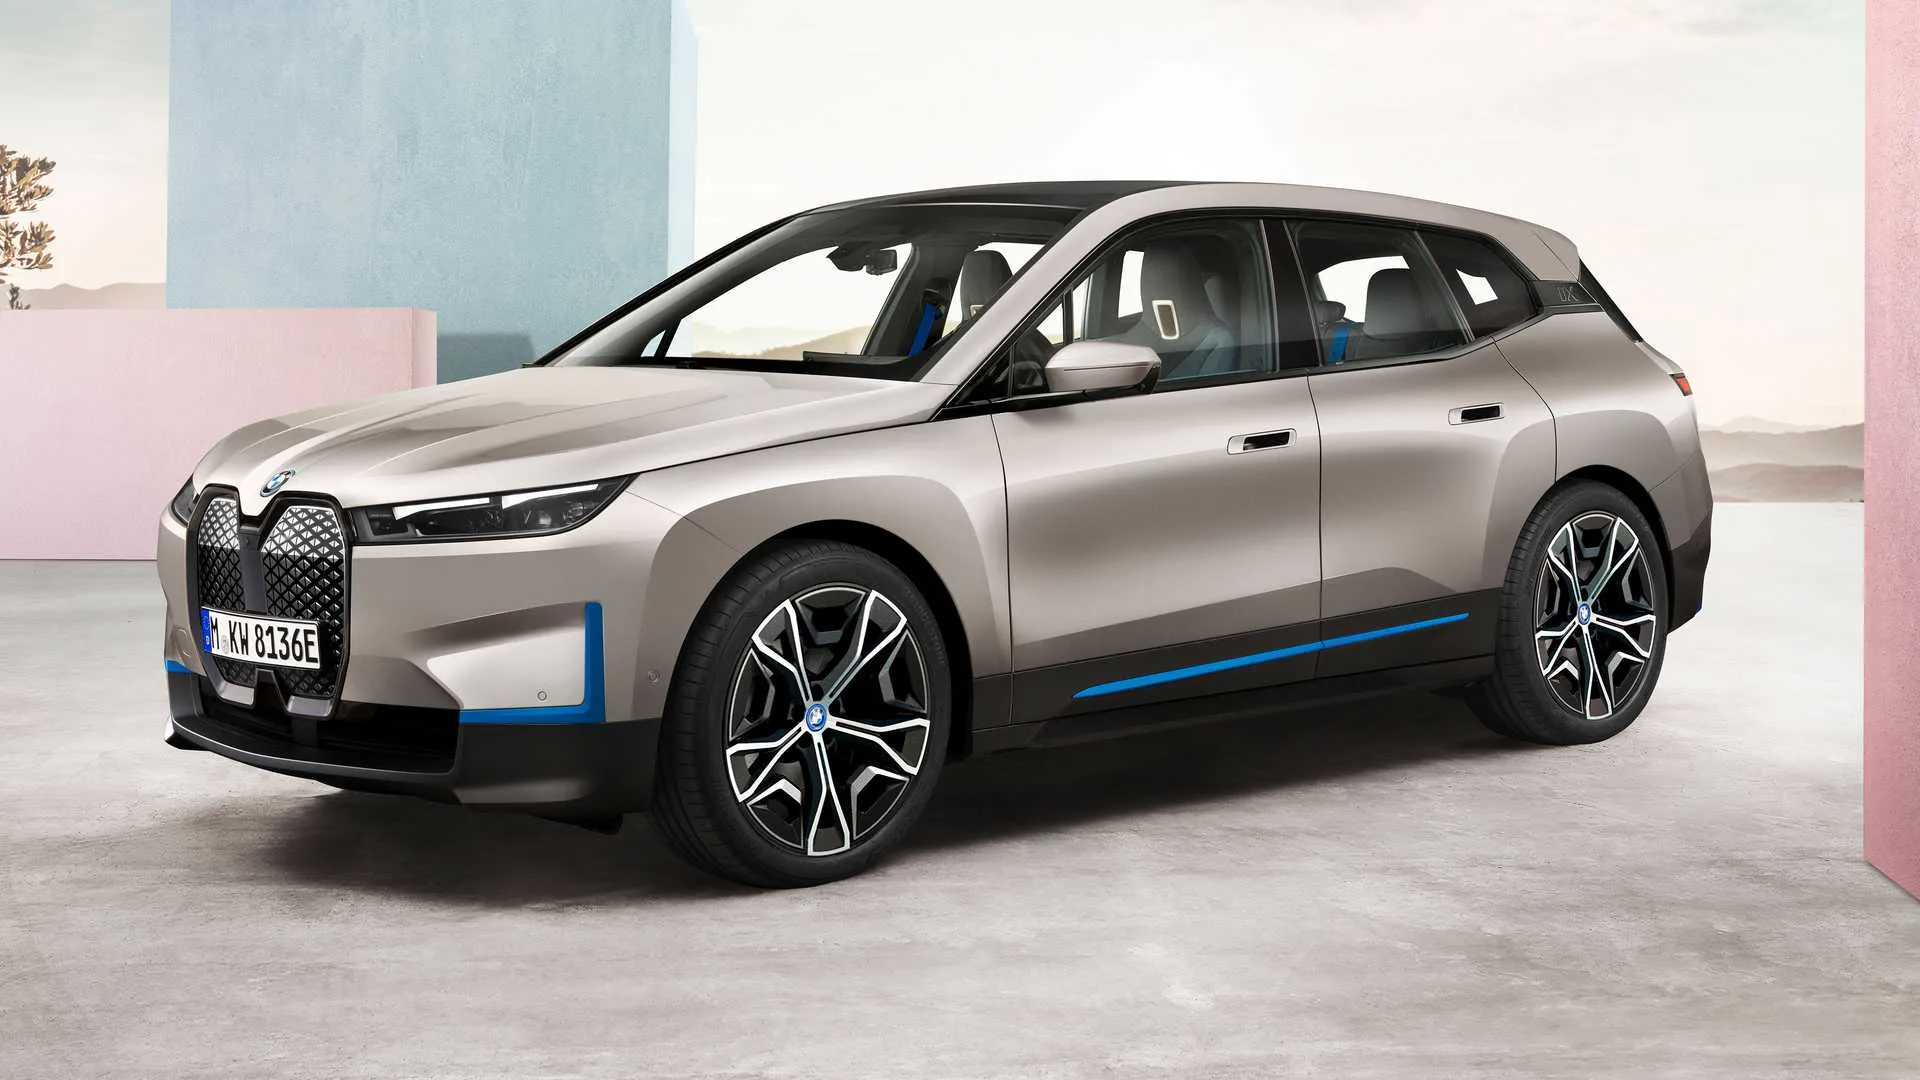 BMW lança carro inteligente em live na Twitch e abre nova era da